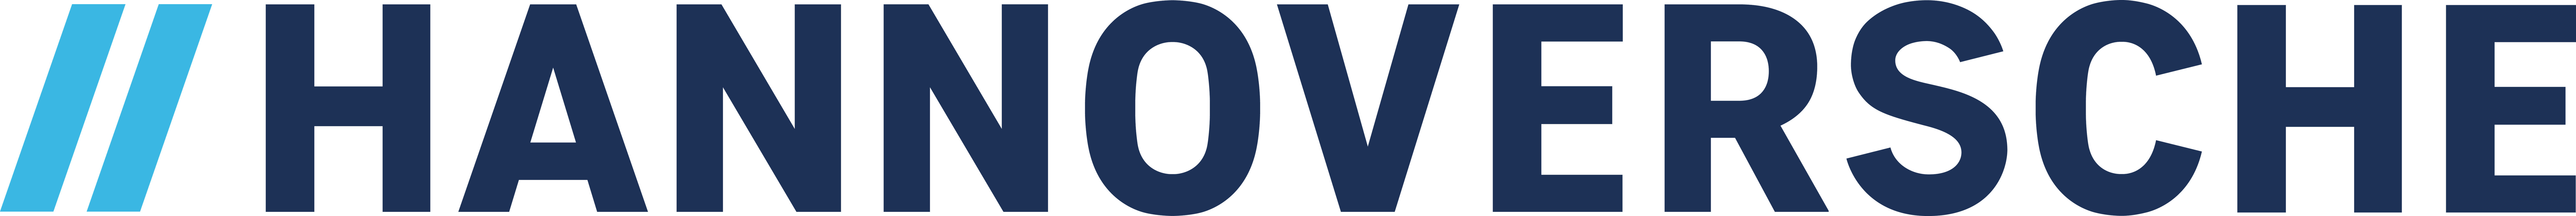 Hannoversche logo